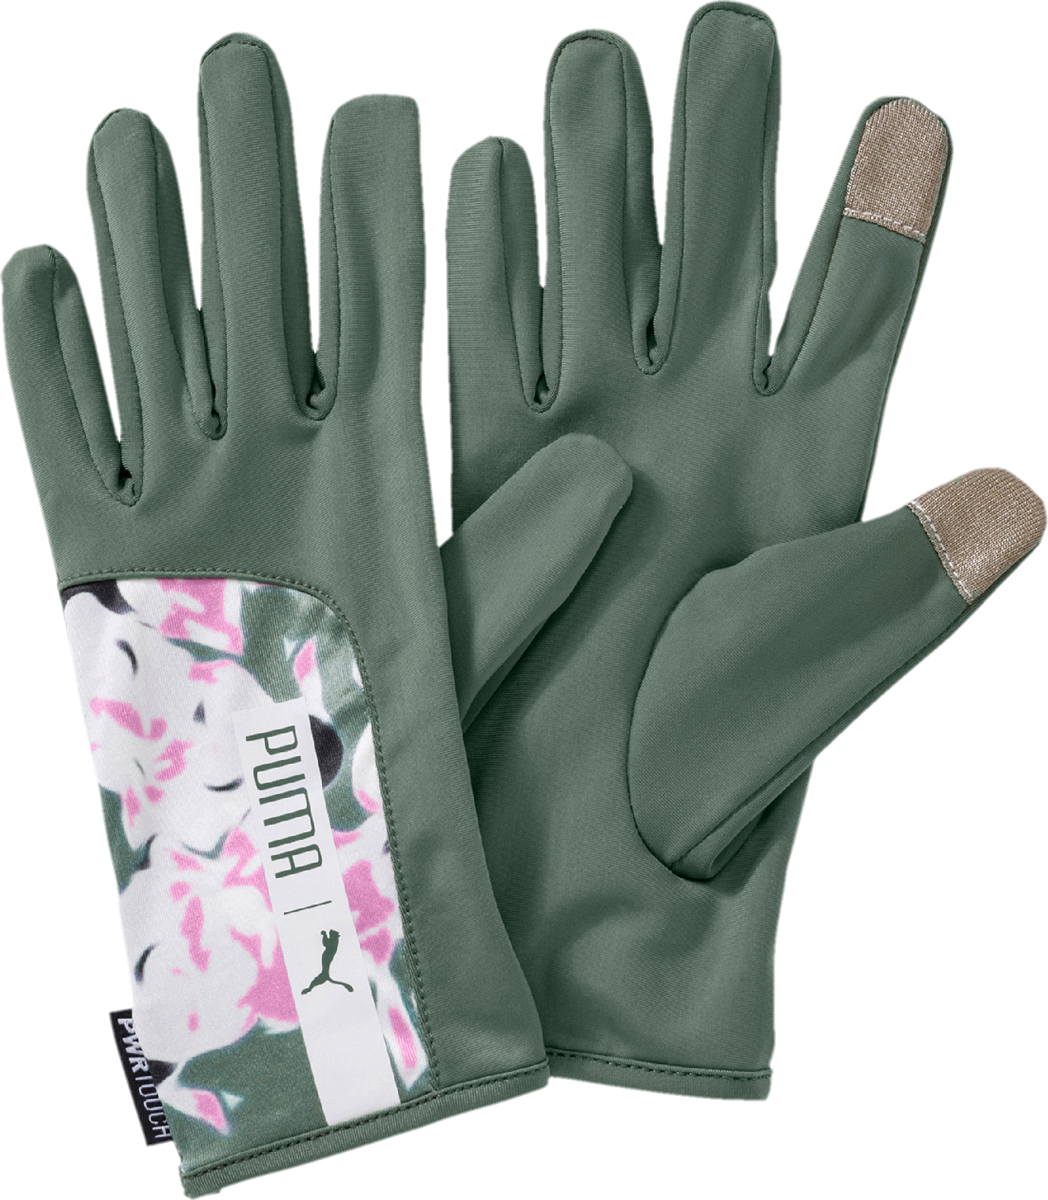 Перчатки женские Puma Pr Womens Gloves, цвет: зеленый, розовый. 04146301. Размер S (7)